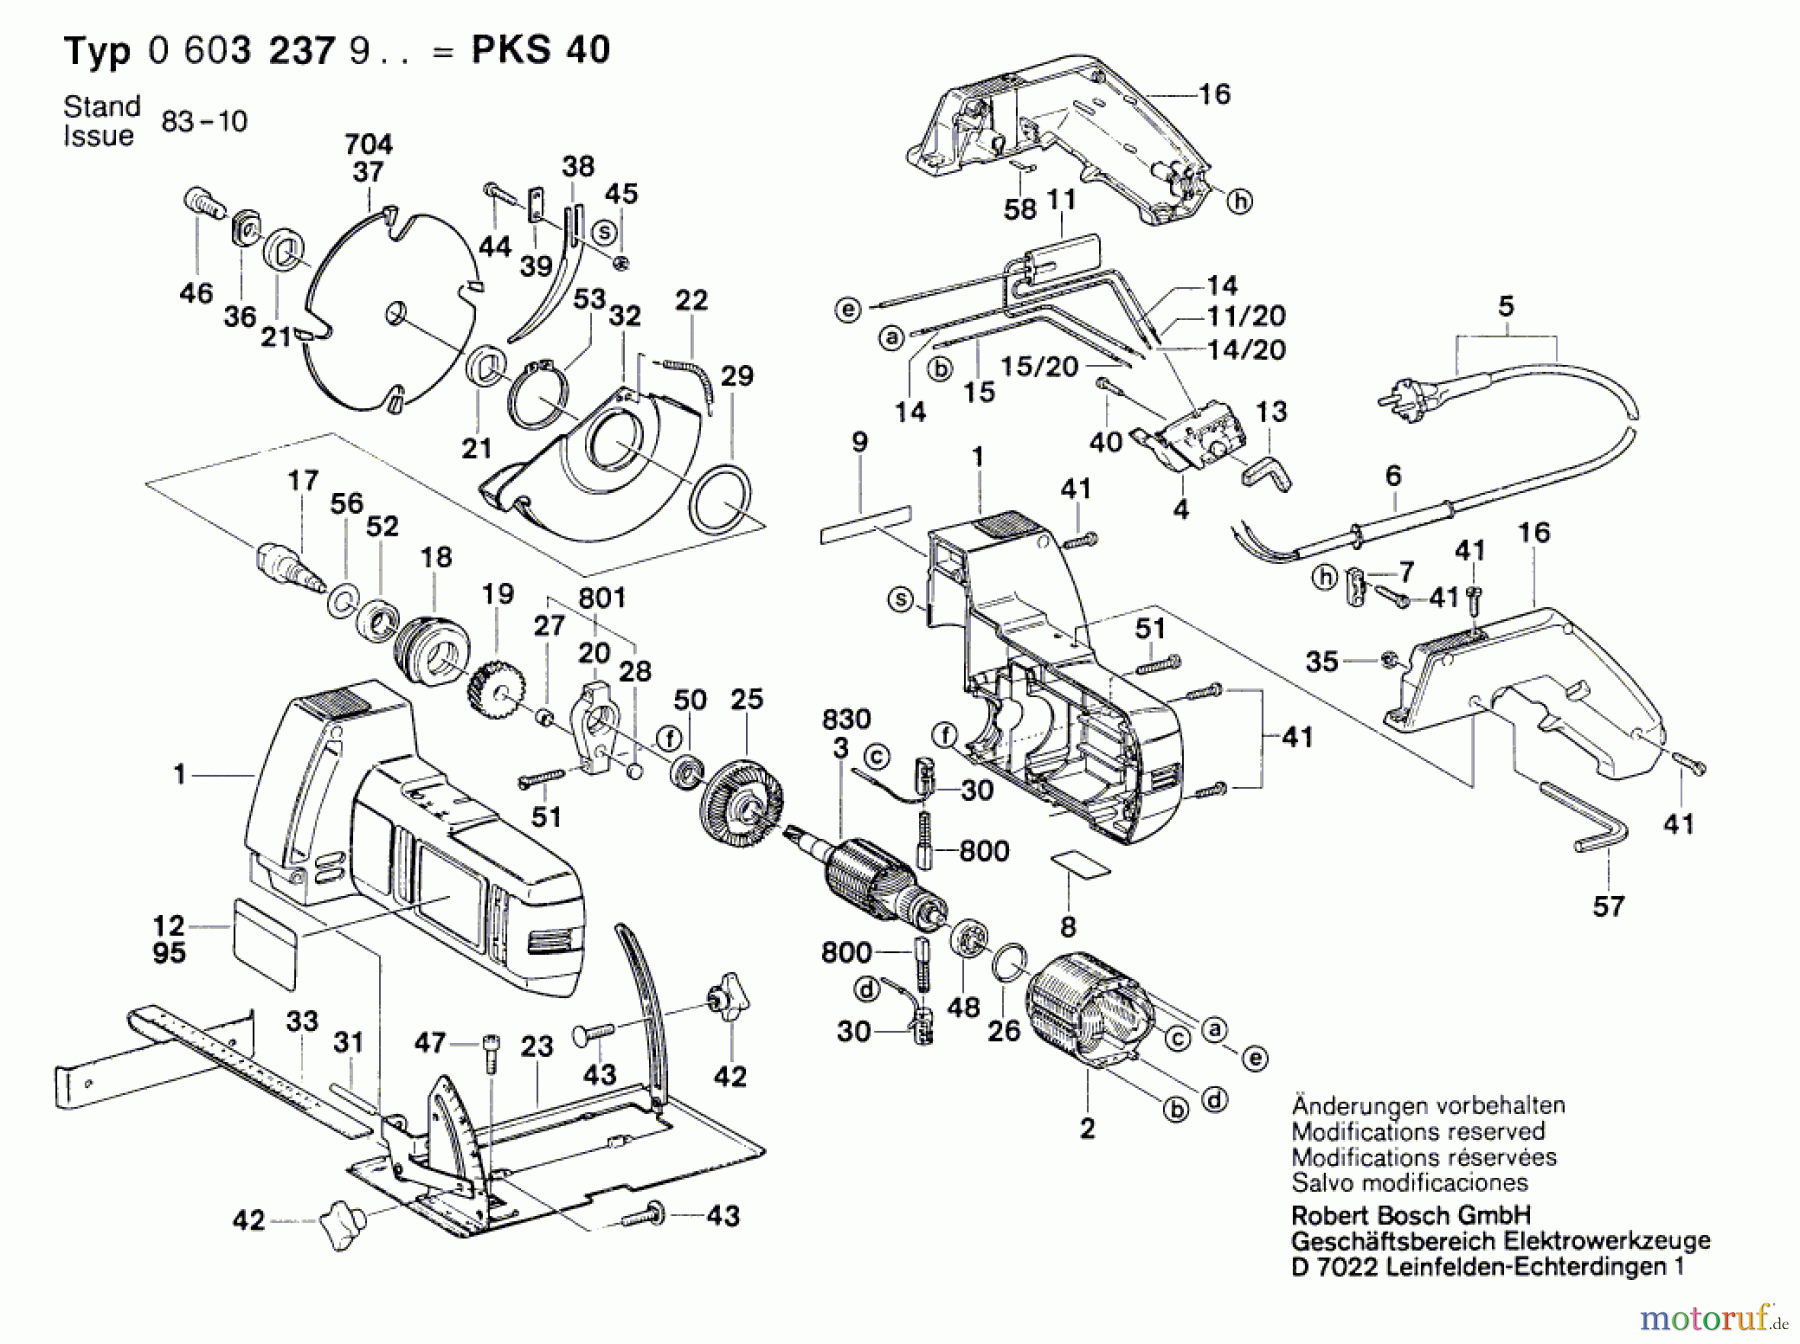  Bosch Werkzeug Handkreissäge PKS 40 Seite 1